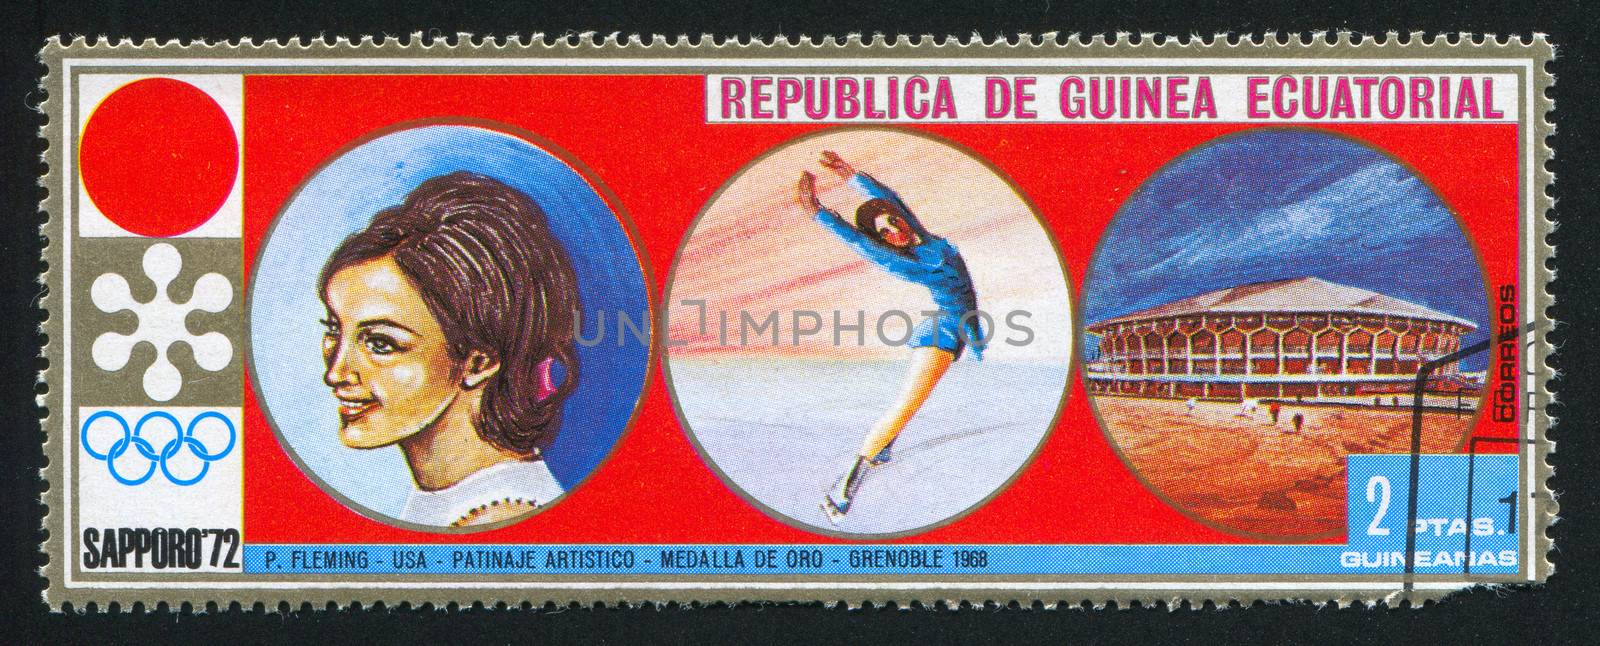 EQUATORIAL GUINEA - CIRCA 1972: stamp printed by Equatorial Guinea, shows Figure skating, circa 1972